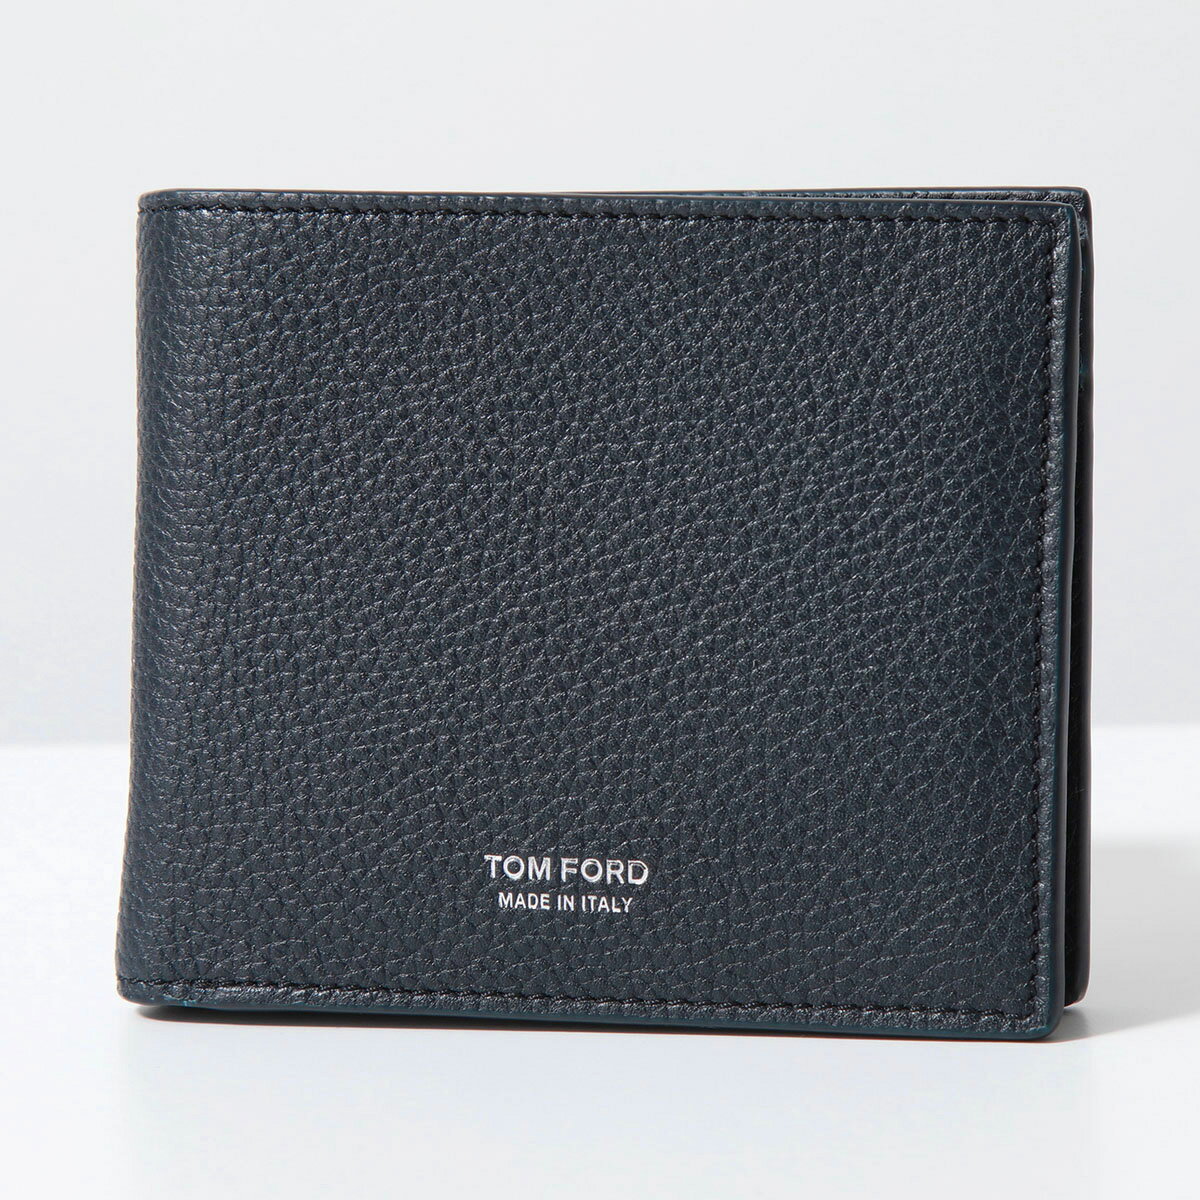 TOM FORD トムフォード 二つ折り財布 Y0278 LCL158 メンズ レザー スモール財布 ロゴ 小銭入れあり カラー3色